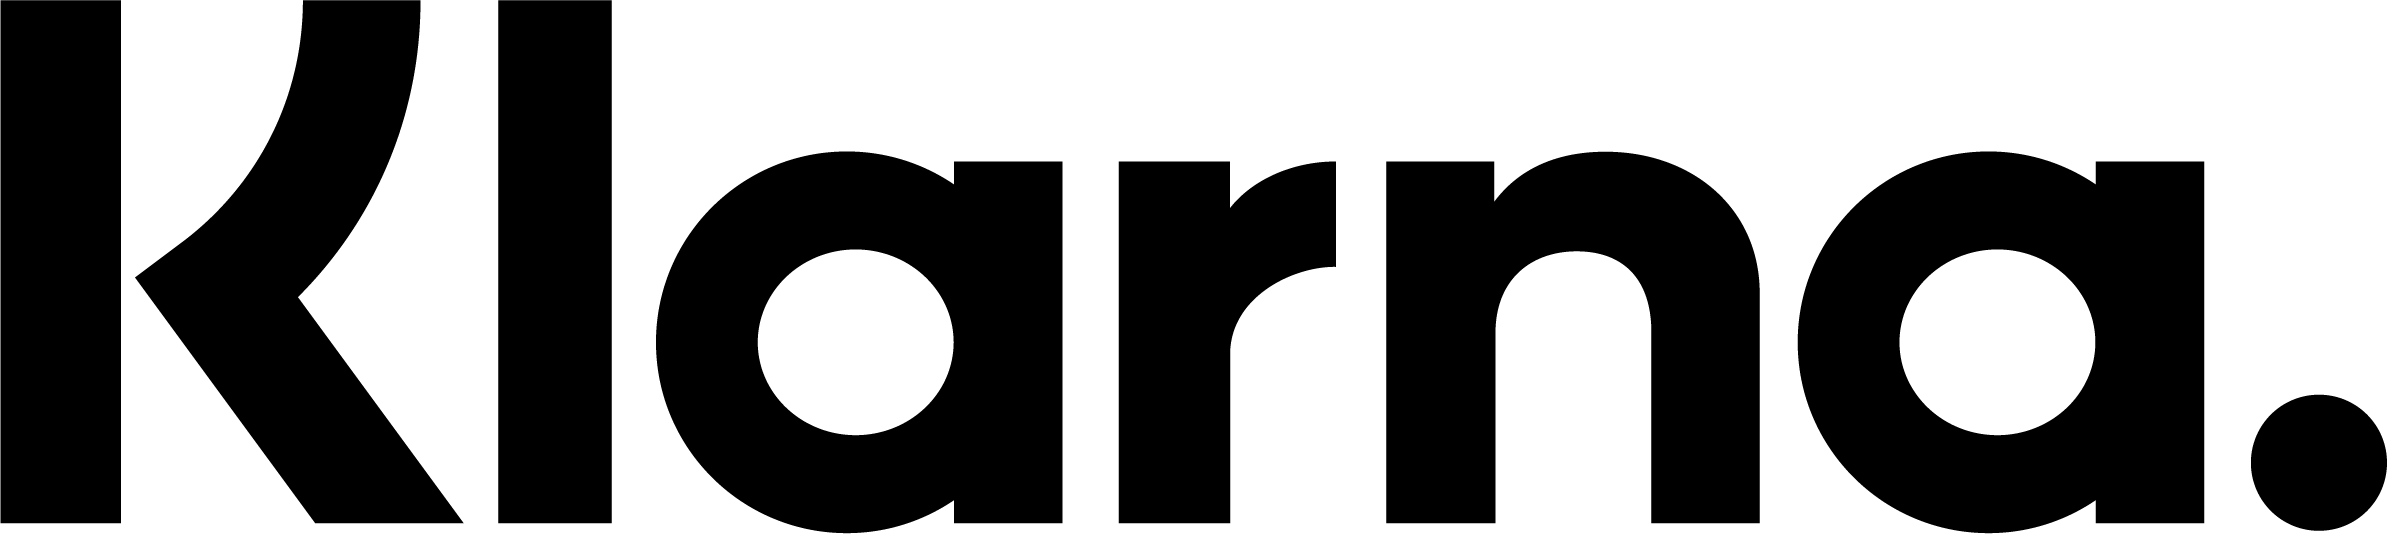 Logotipo da Klarna